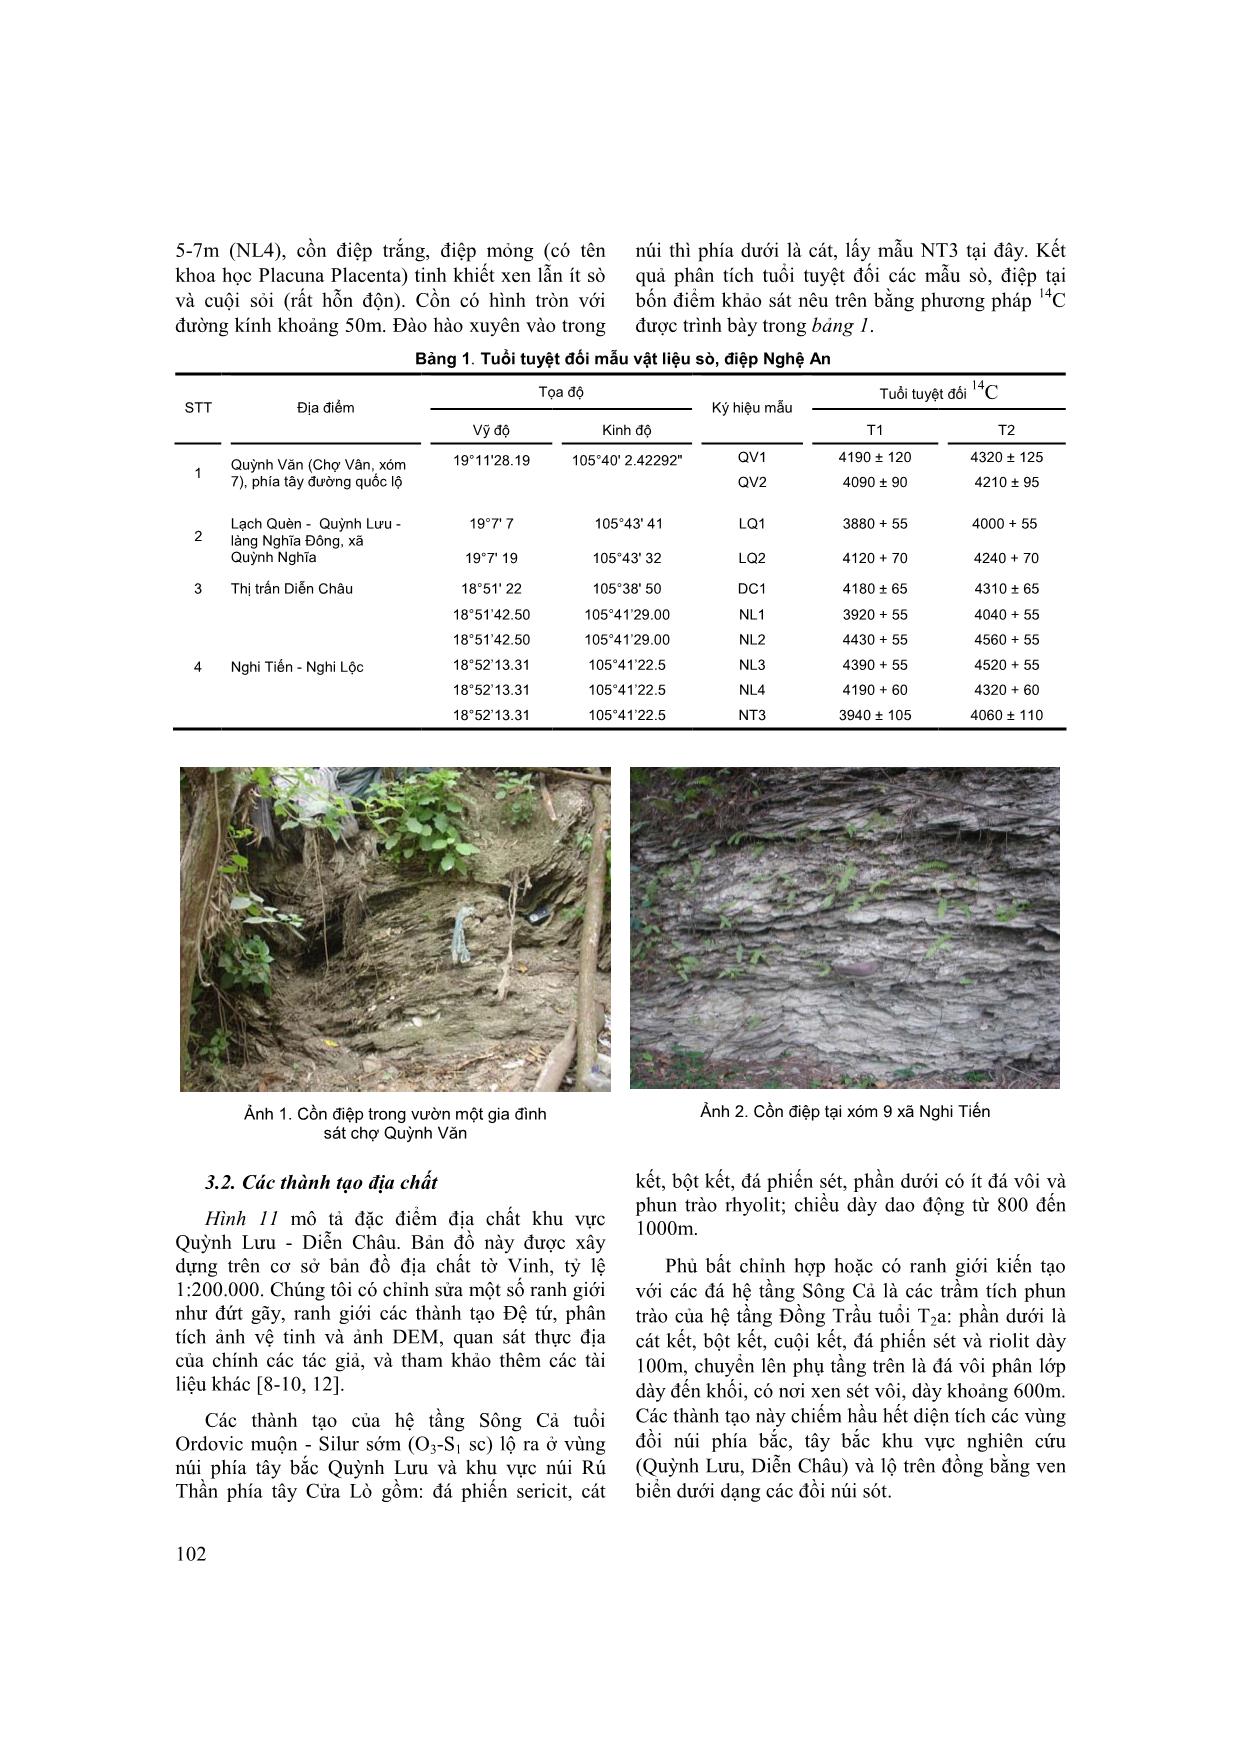 Một số kết quả nghiên cứu phân bố sò, điệp khu vực Nghệ An trang 6